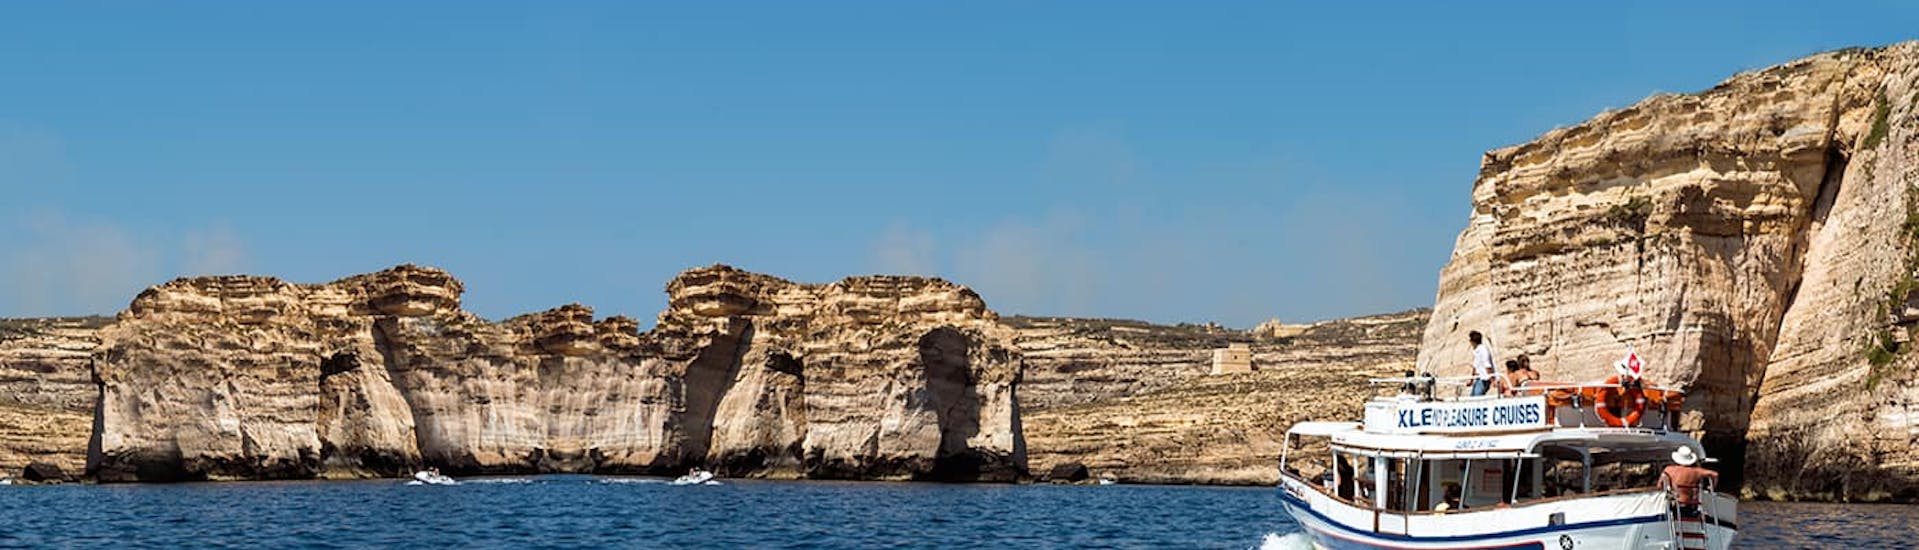 Gita privata in barca da Gozo intorno a Comino e Gozo.